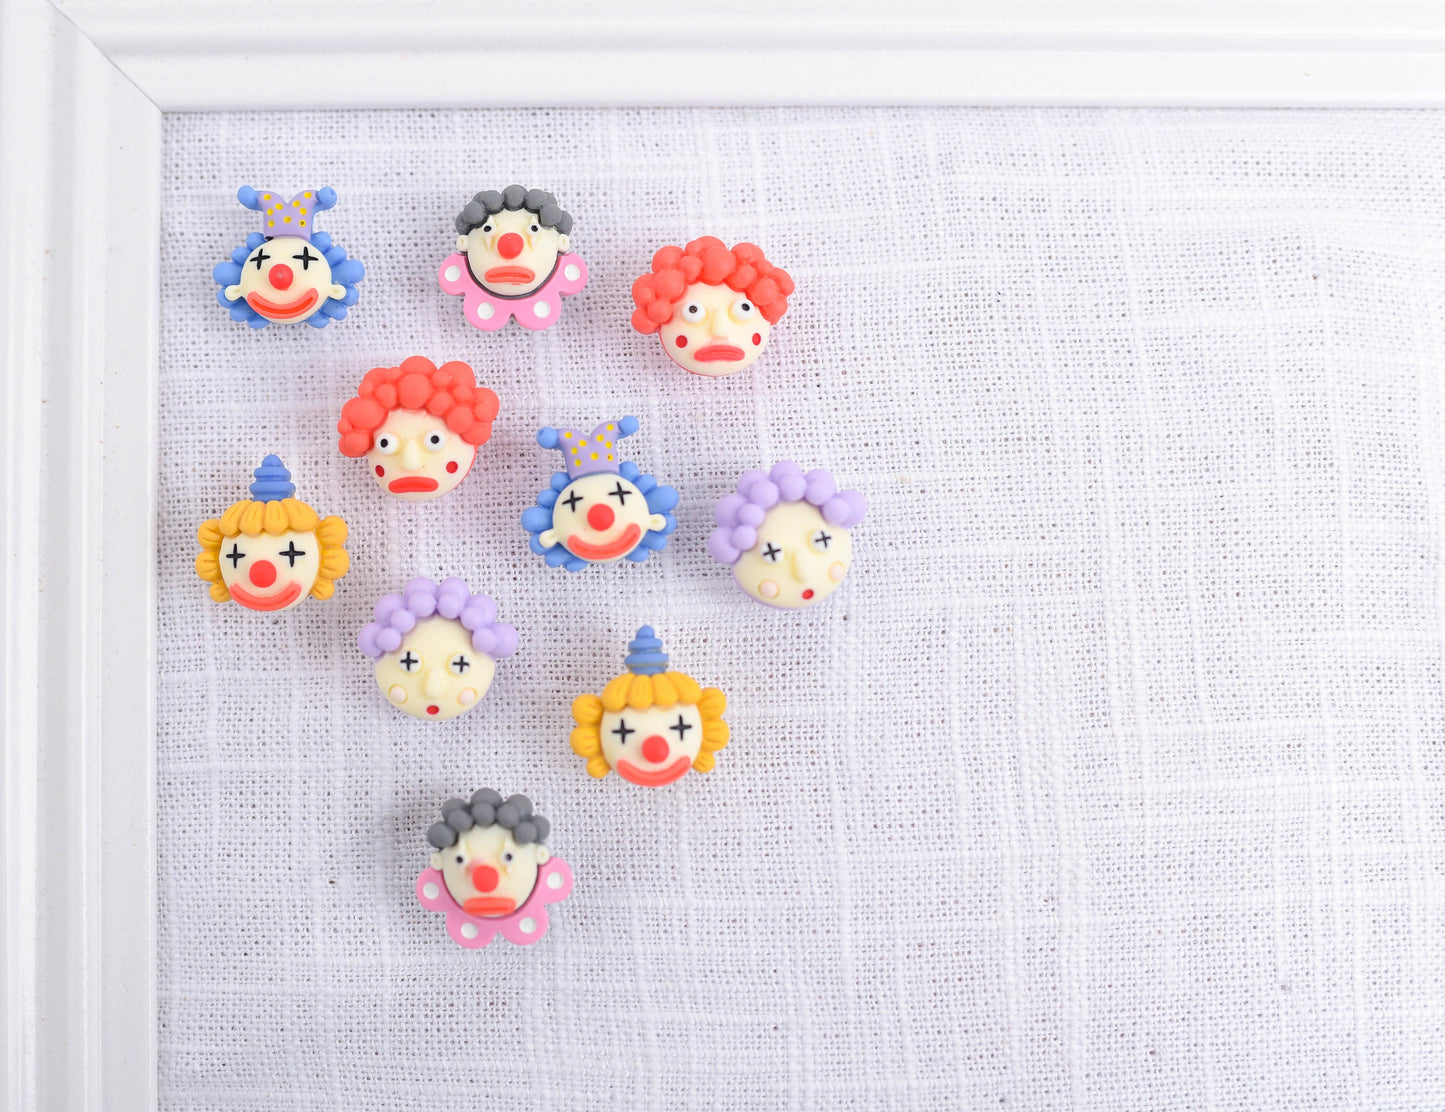 Cute Clown Push Pins- Set of 8